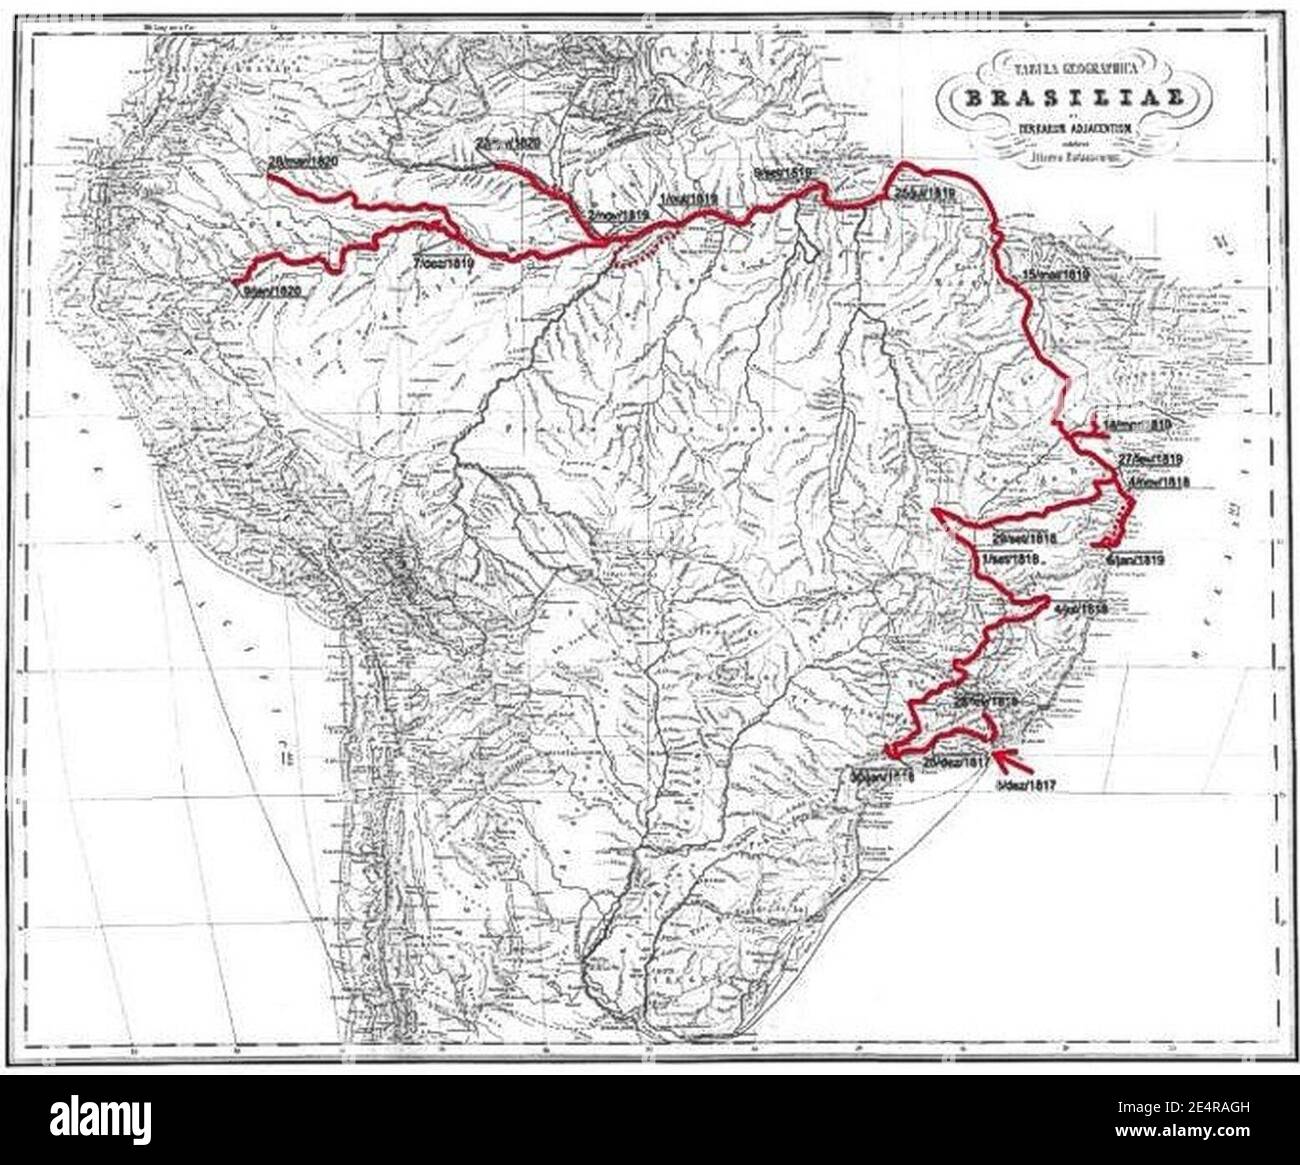 Martius und Spix Route in Brasilien 1817-1820. Stockfoto